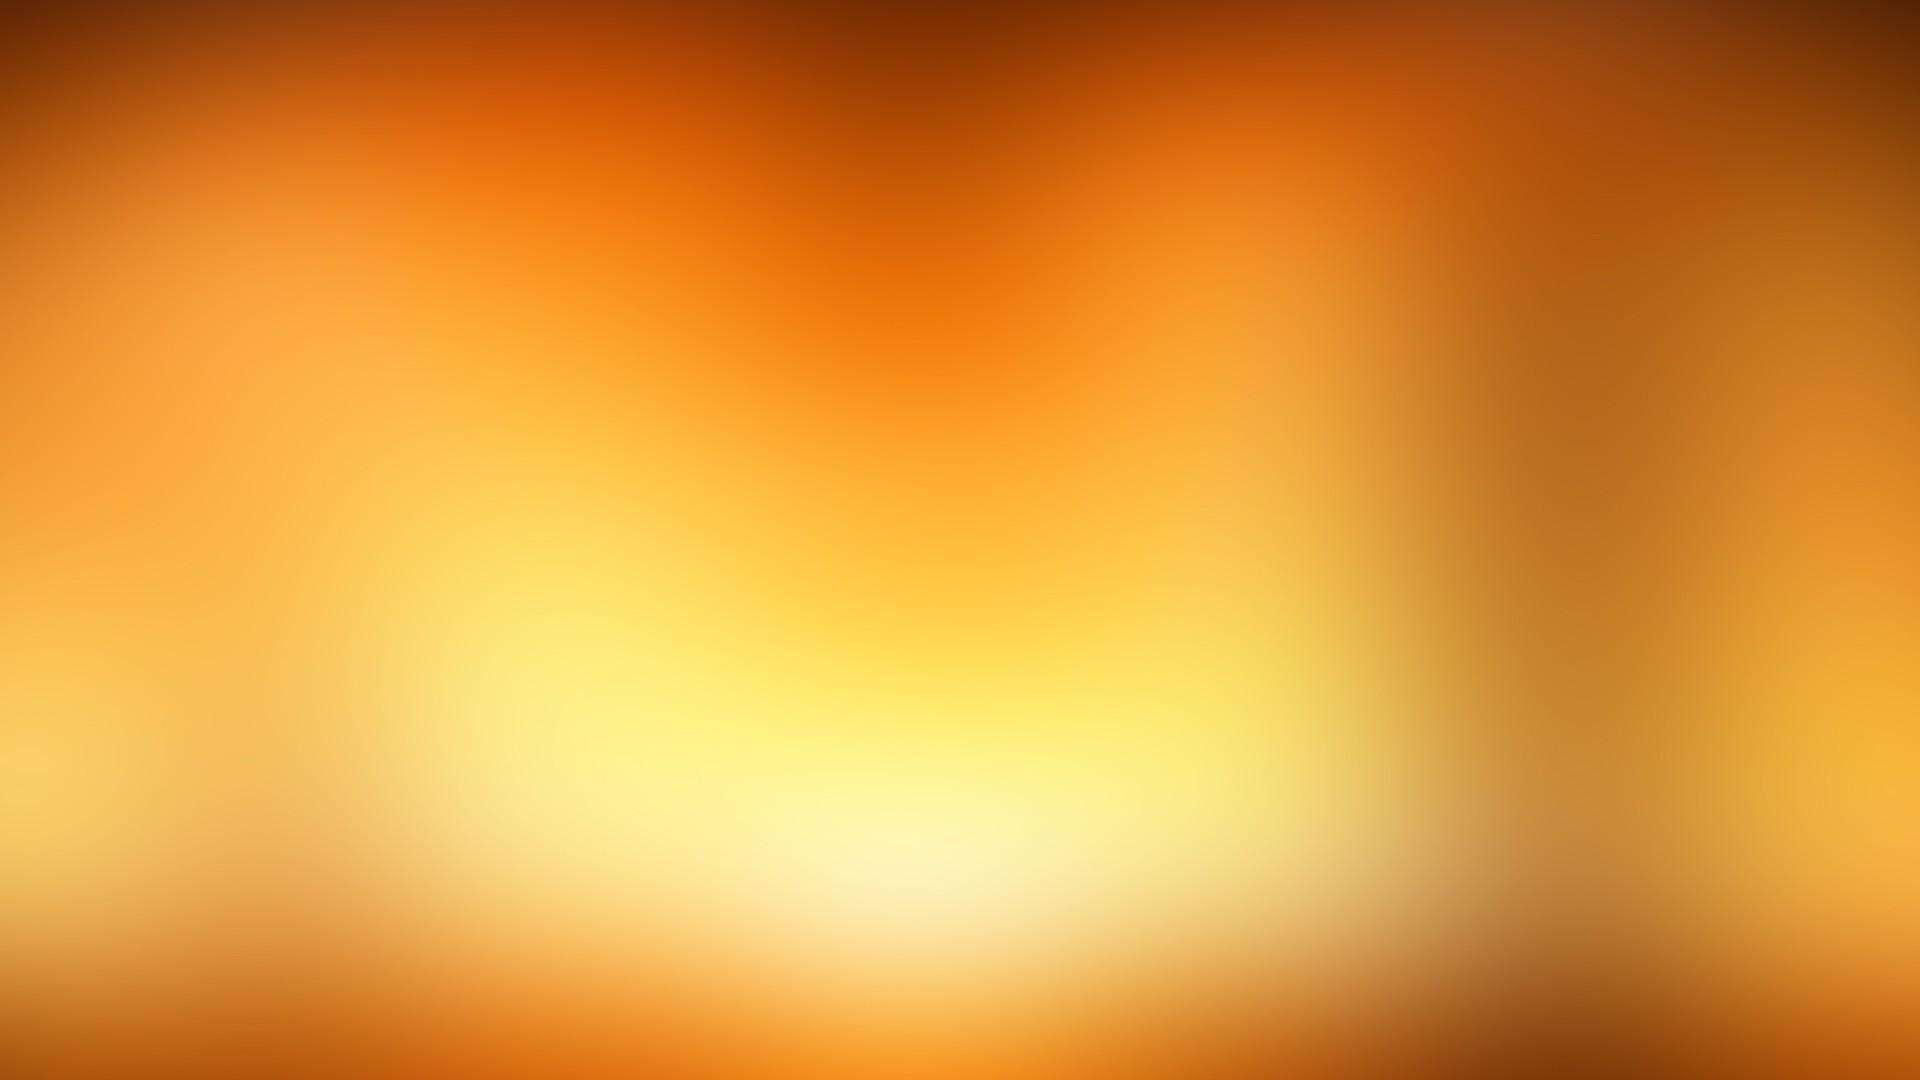 Hình nền chuyển đổ màu cam và vàng nhìn rất trang nhã và tươi mới. Nó giúp cho màn hình của bạn trở nên sinh động hơn và tràn đầy năng lượng tích cực. Nhấn vào hình ảnh để thưởng thức sự độc đáo của chuyển đổ màu sắc này.